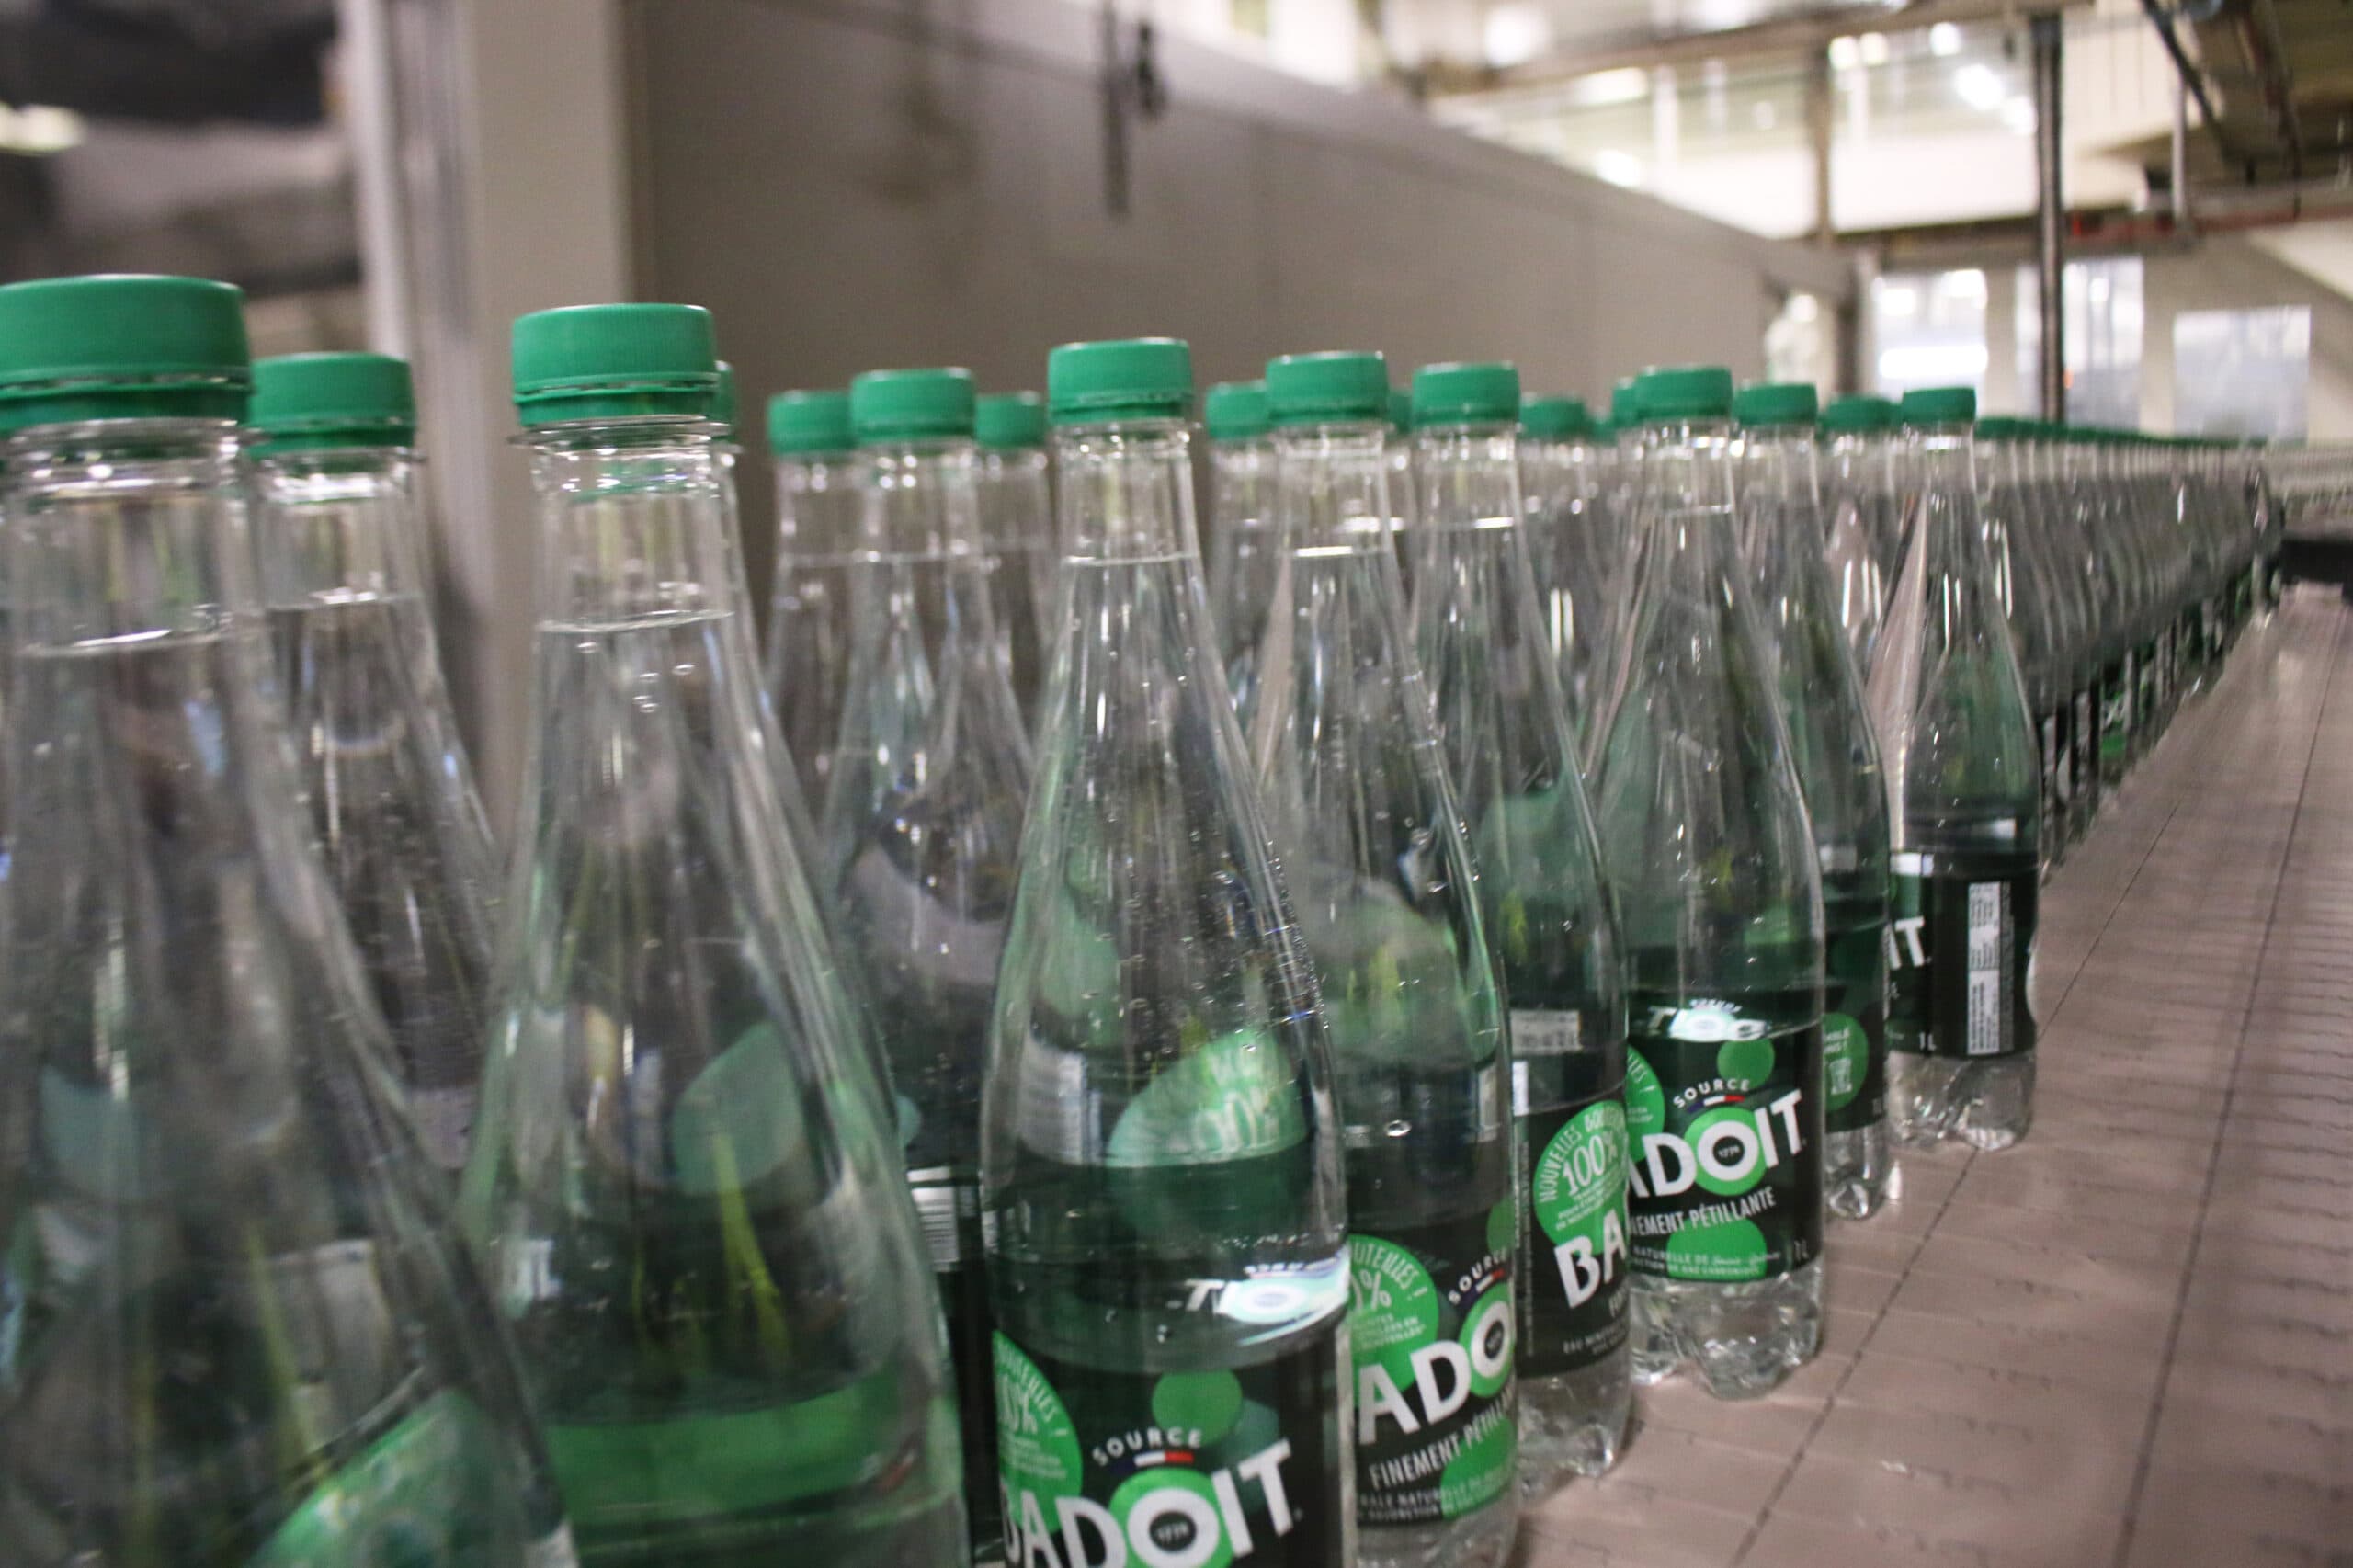 Les bouteilles colorées étaient plus compliquées à recycler pour Danone et sa marque Badoit